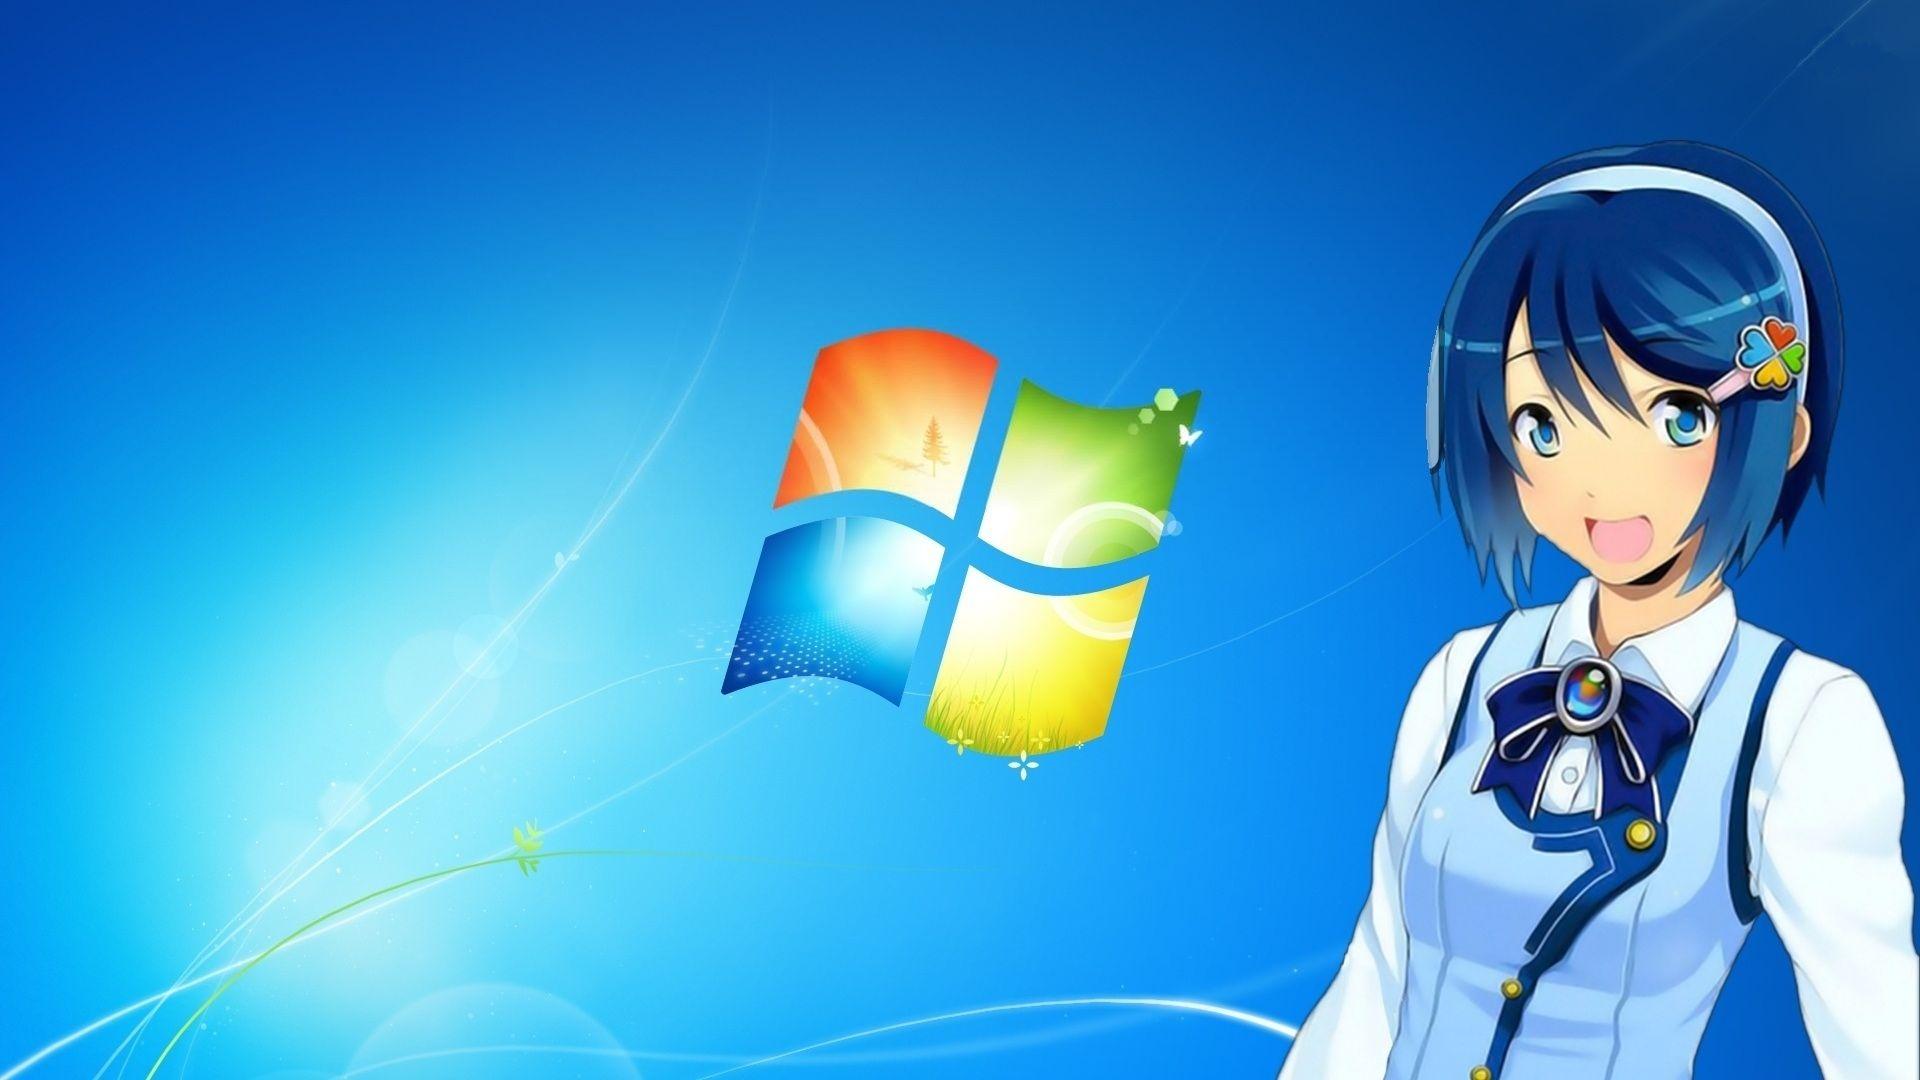 Best Of Windows 7 Anime Girl Wallpaper Design Wallpaper HD